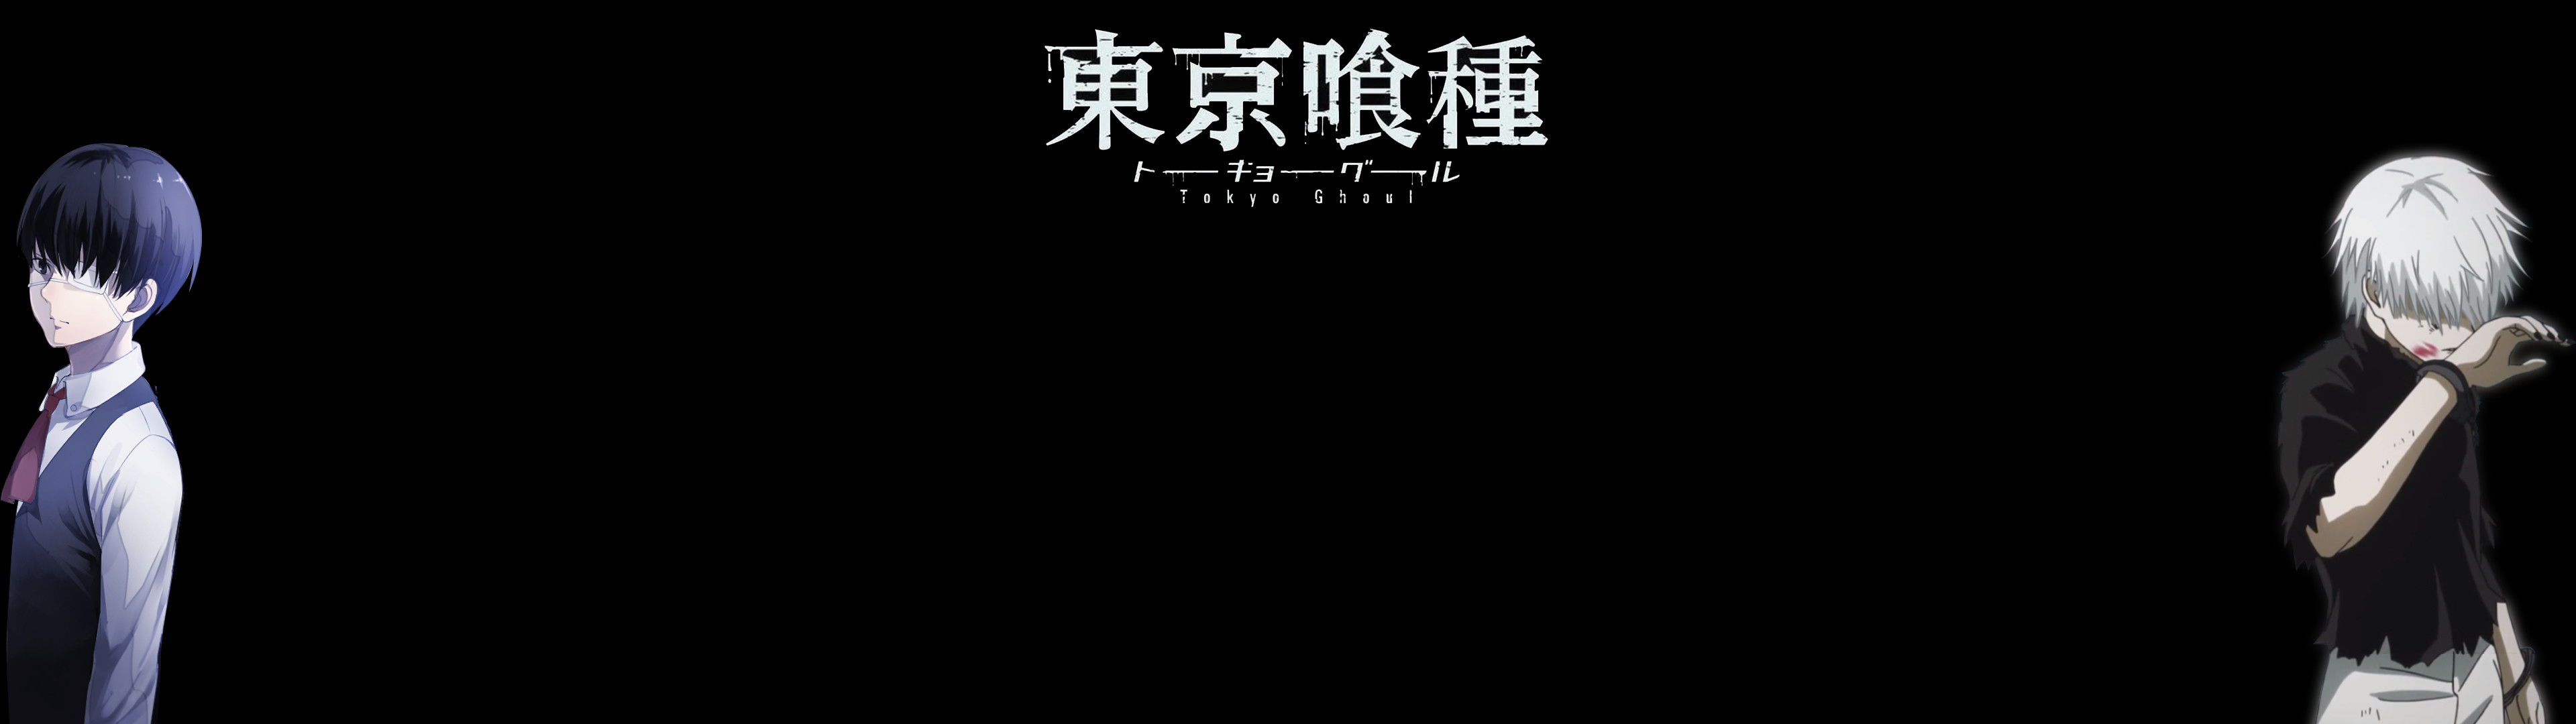 3840x1080 Anime - Tokyo Ghoul Ken Kaneki Wallpaper